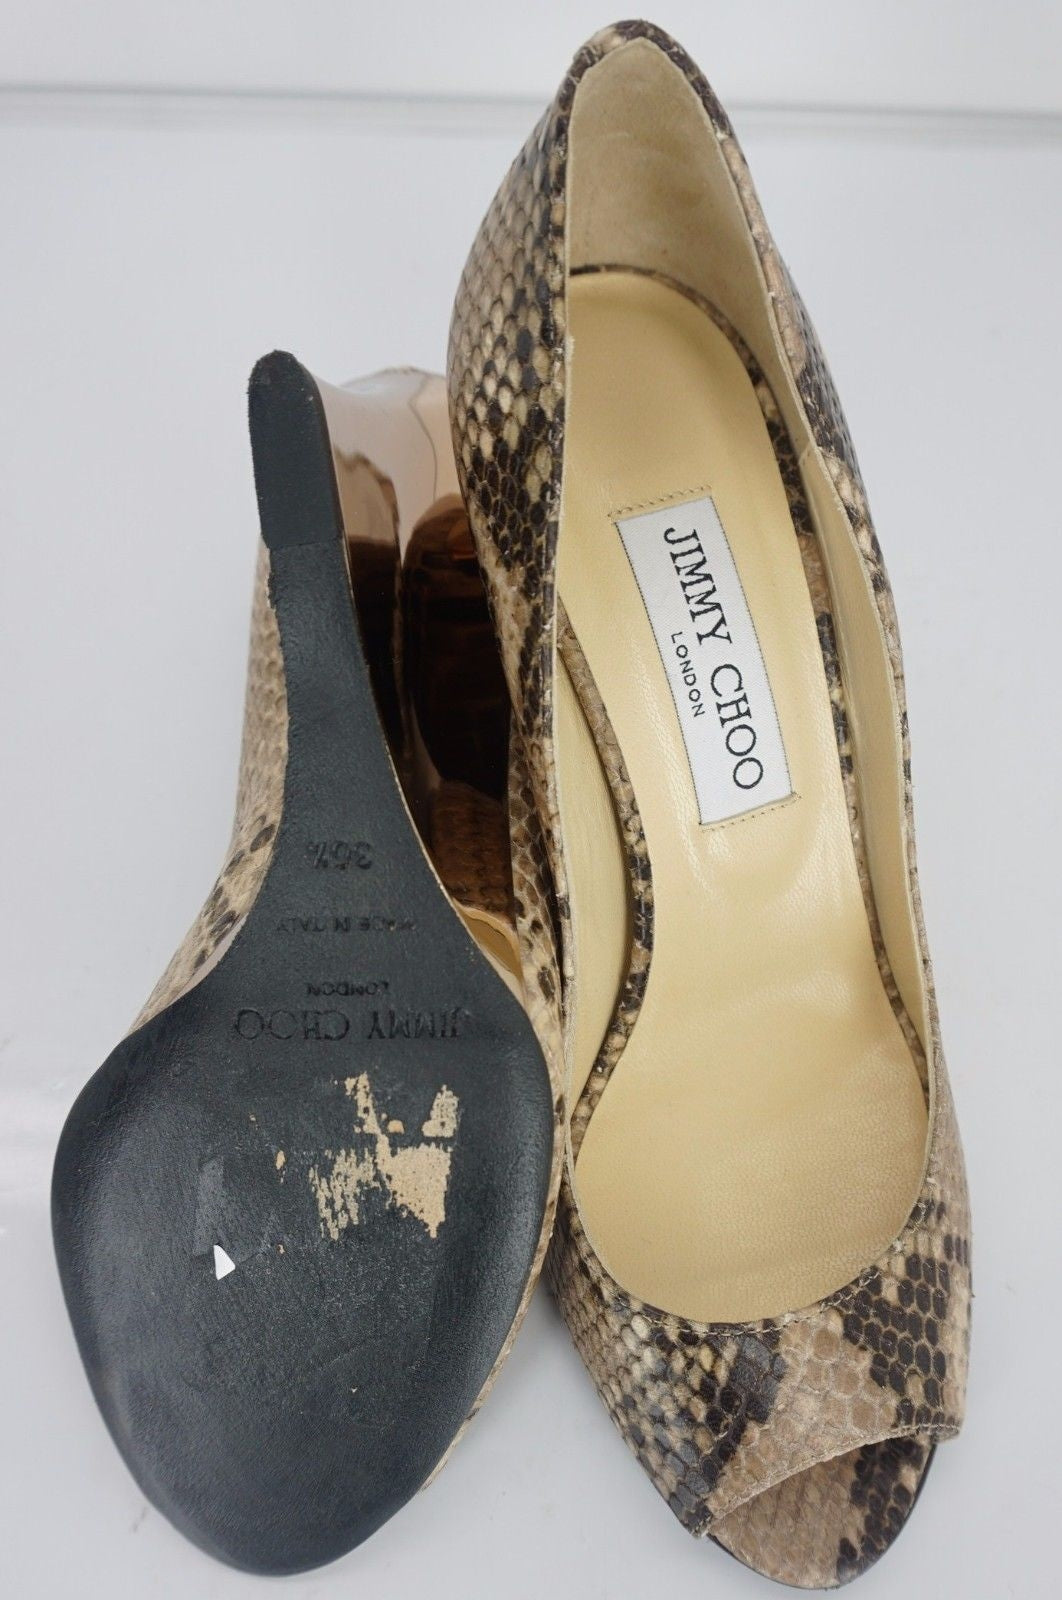 Jimmy Choo Baxen Beige Snake Leather Open Toe Wedge Heel Pump Size 36.5 $650